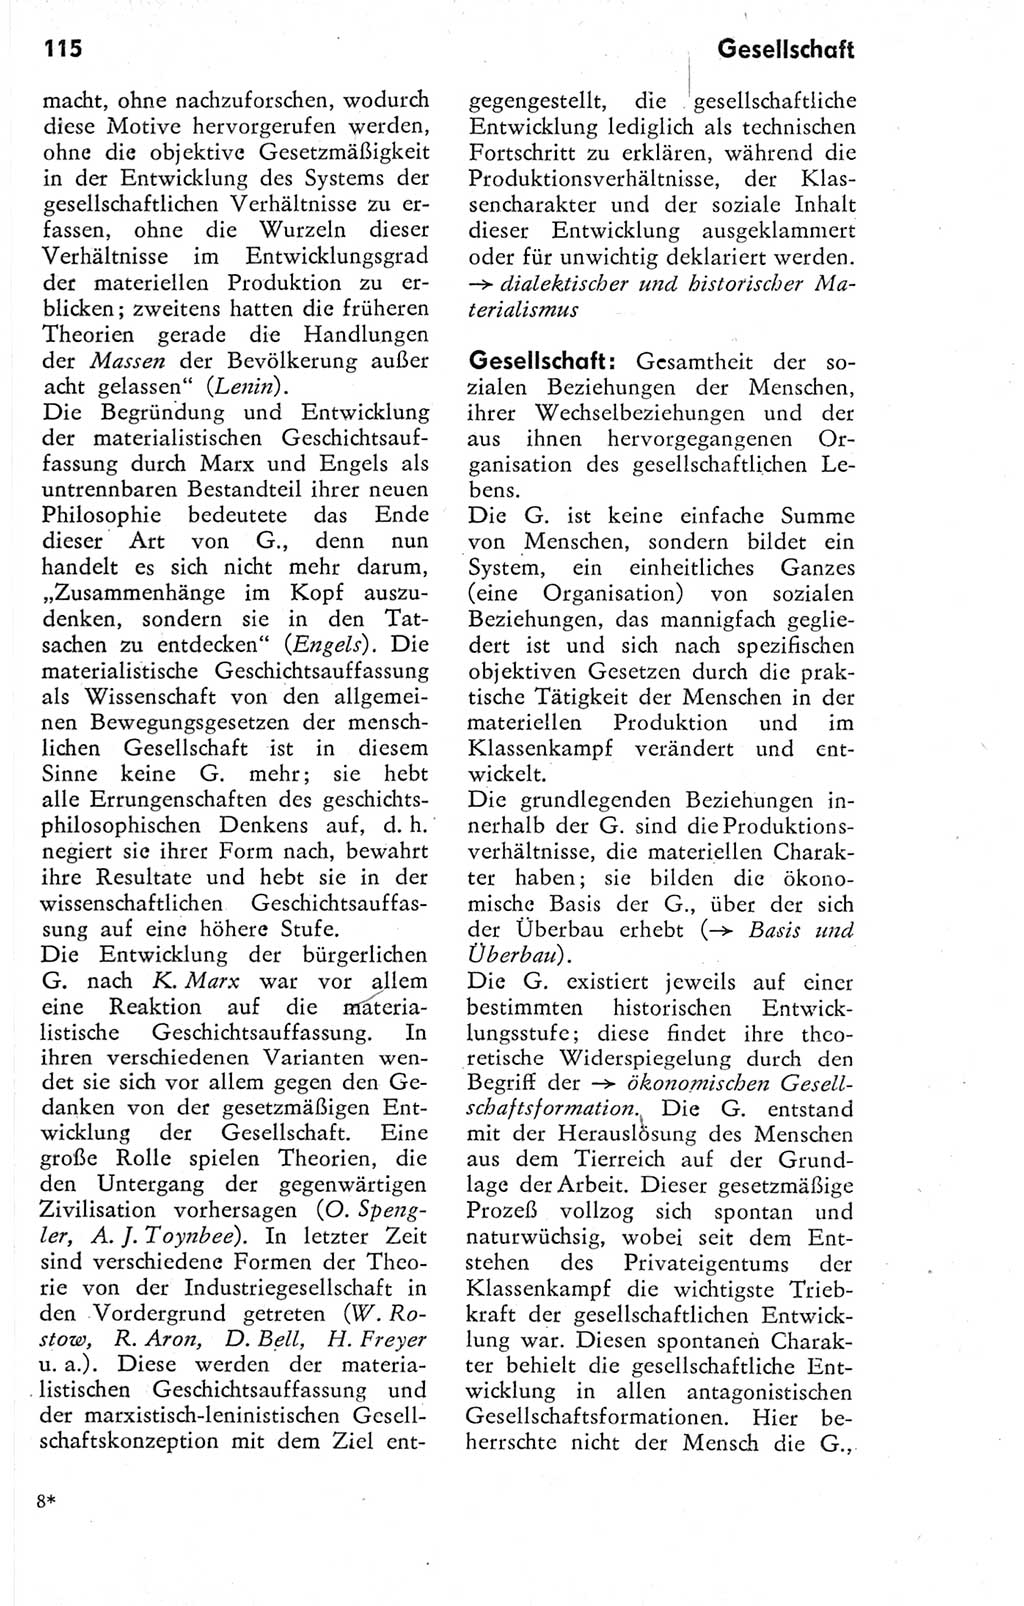 Kleines Wörterbuch der marxistisch-leninistischen Philosophie [Deutsche Demokratische Republik (DDR)] 1974, Seite 115 (Kl. Wb. ML Phil. DDR 1974, S. 115)